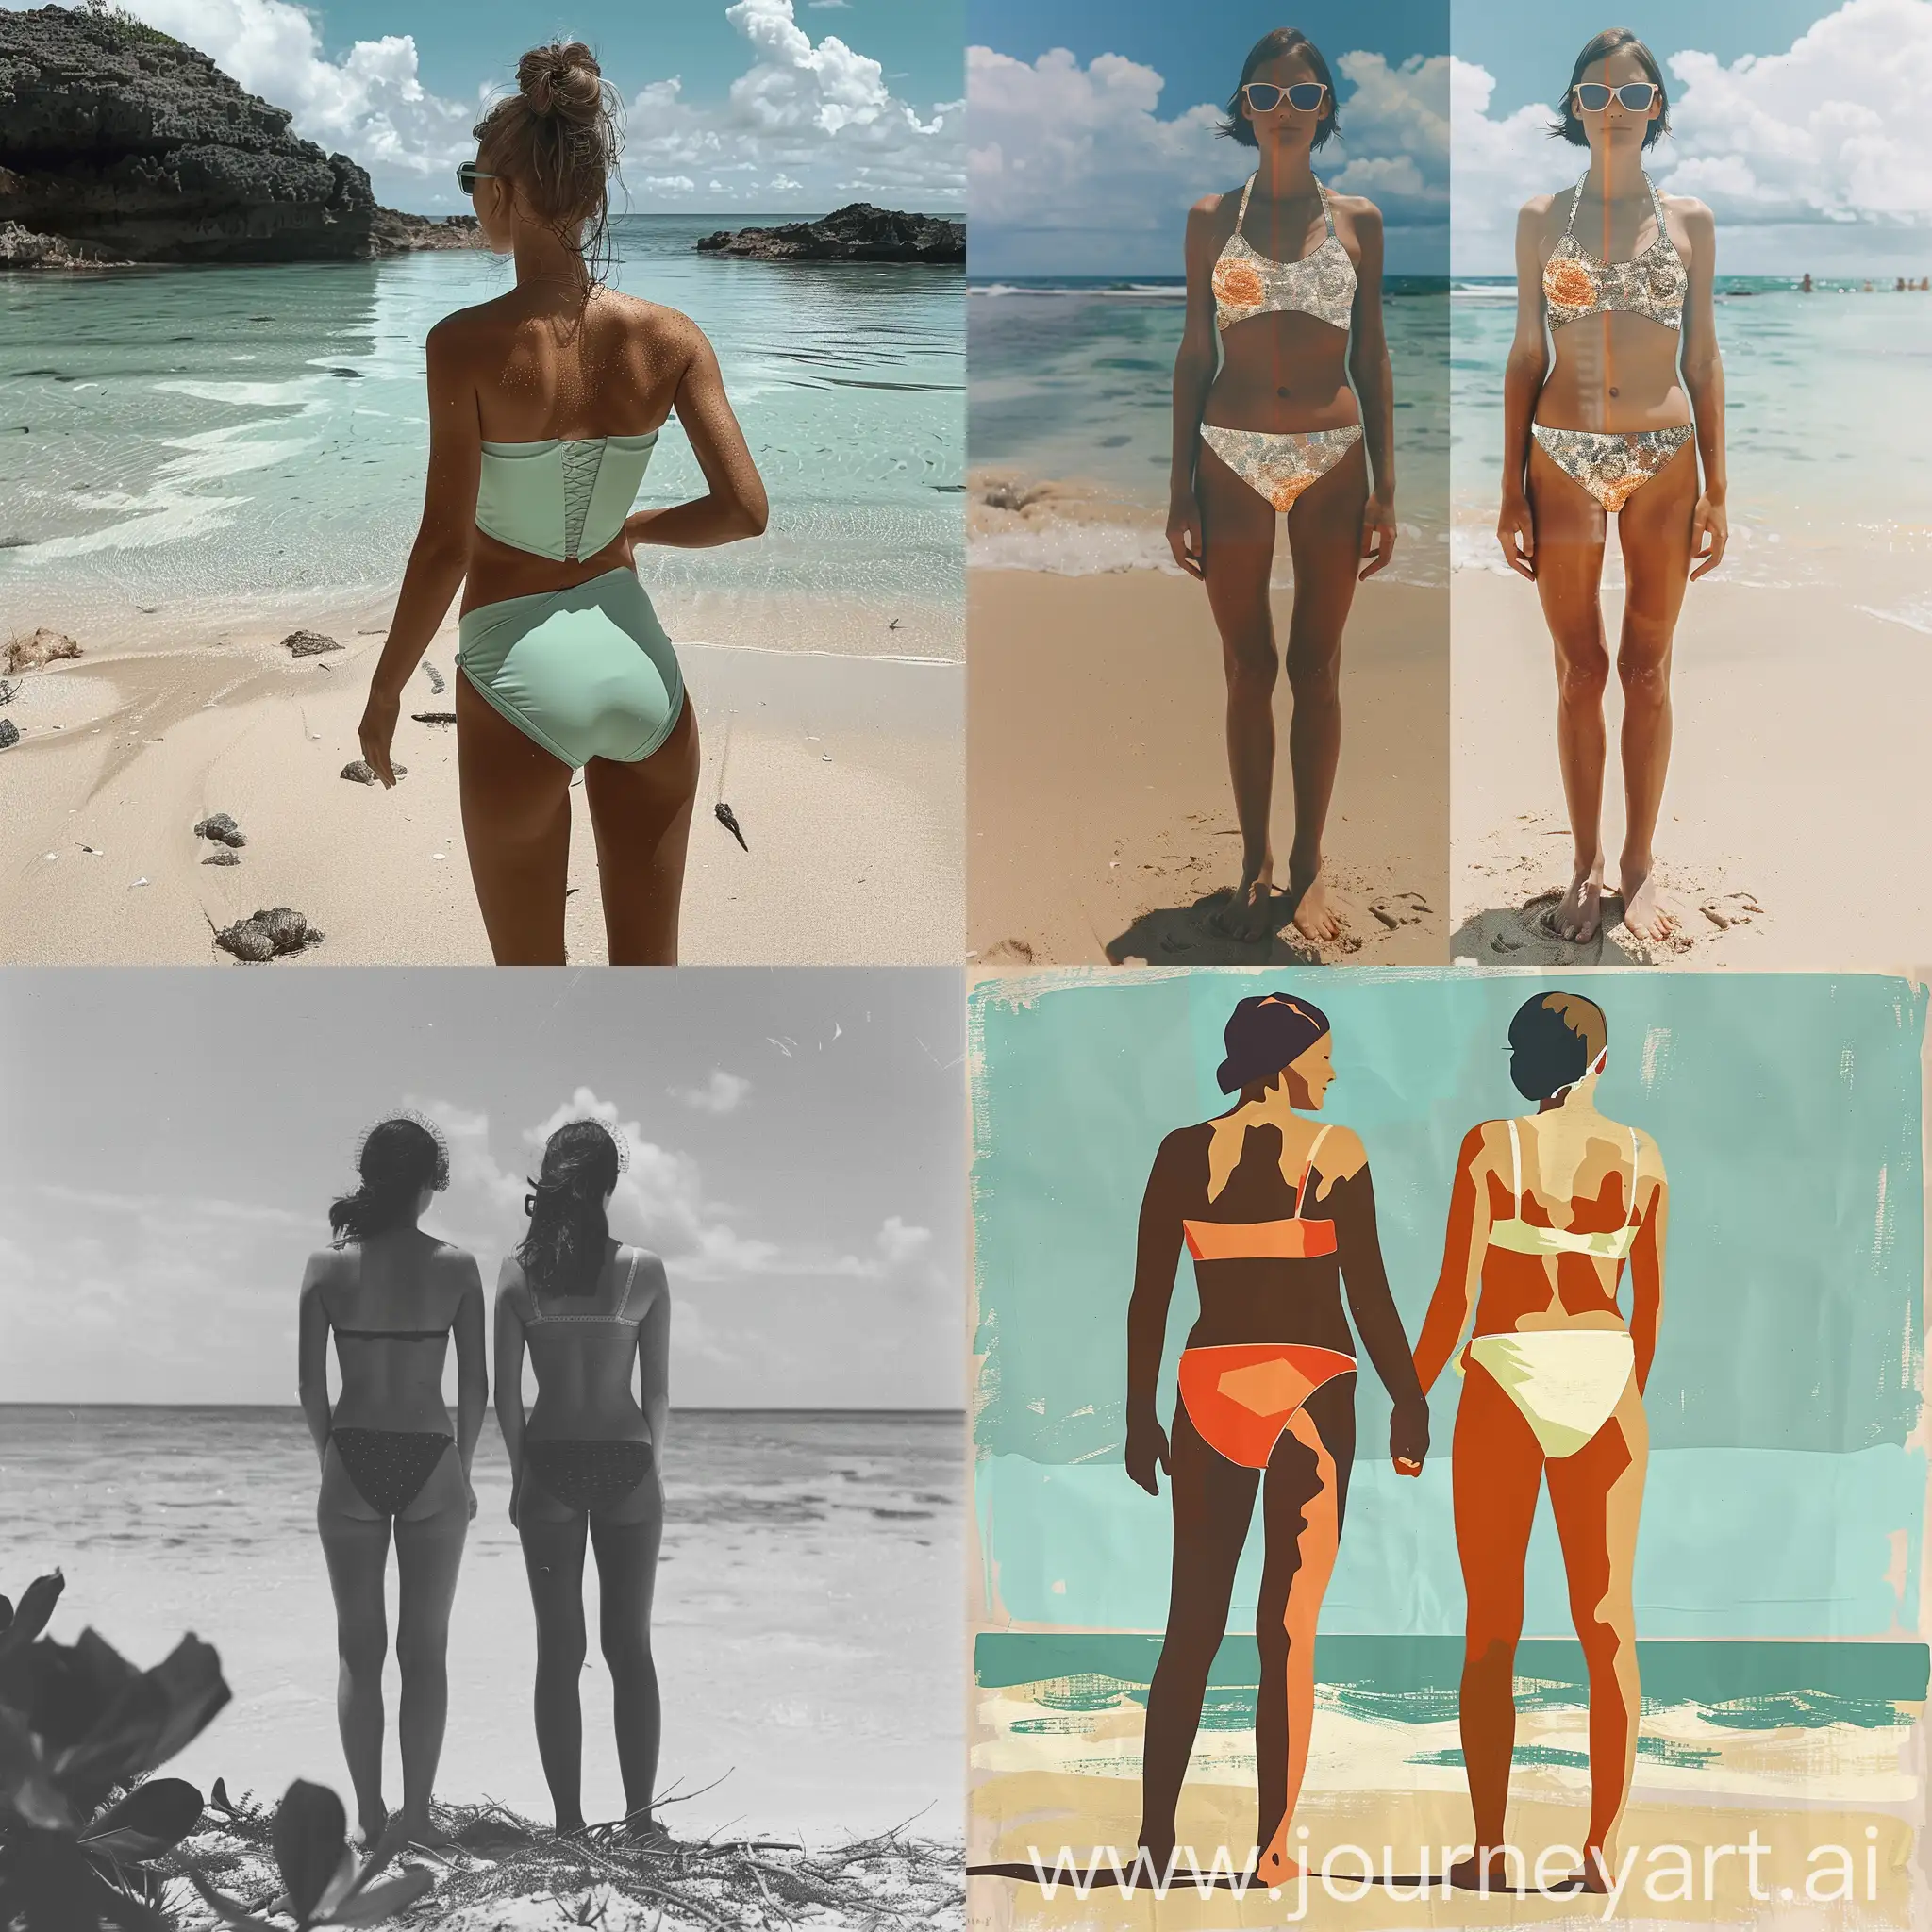 Vibrant-Beach-Scene-with-SwimsuitClad-Figures